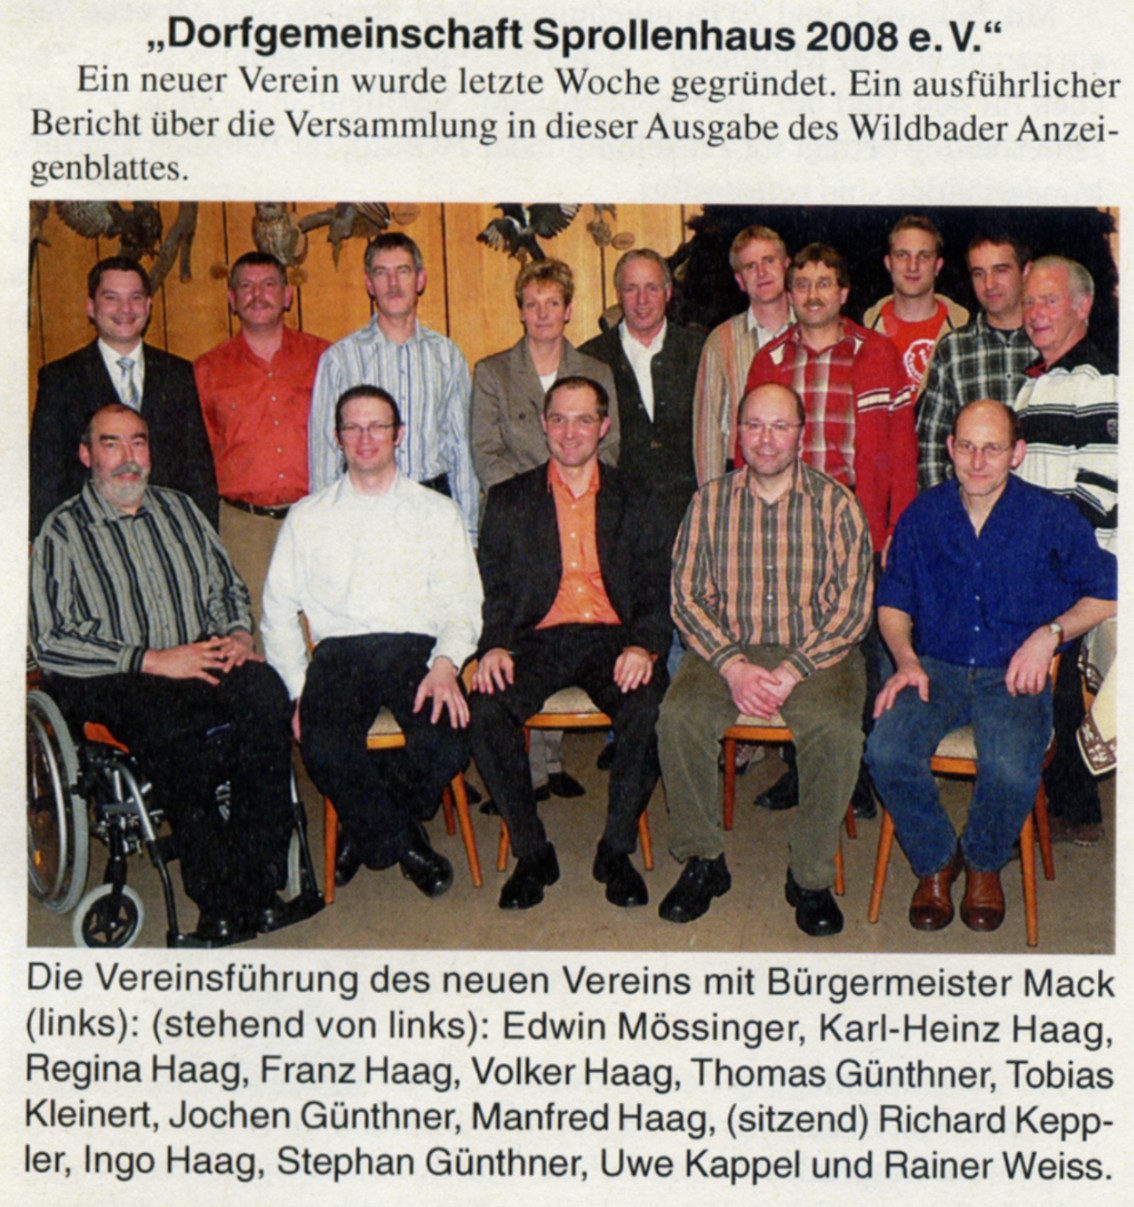 2008-03-19-wildbader_anzeigeblatt-dorfgemeinschaft_vorstand